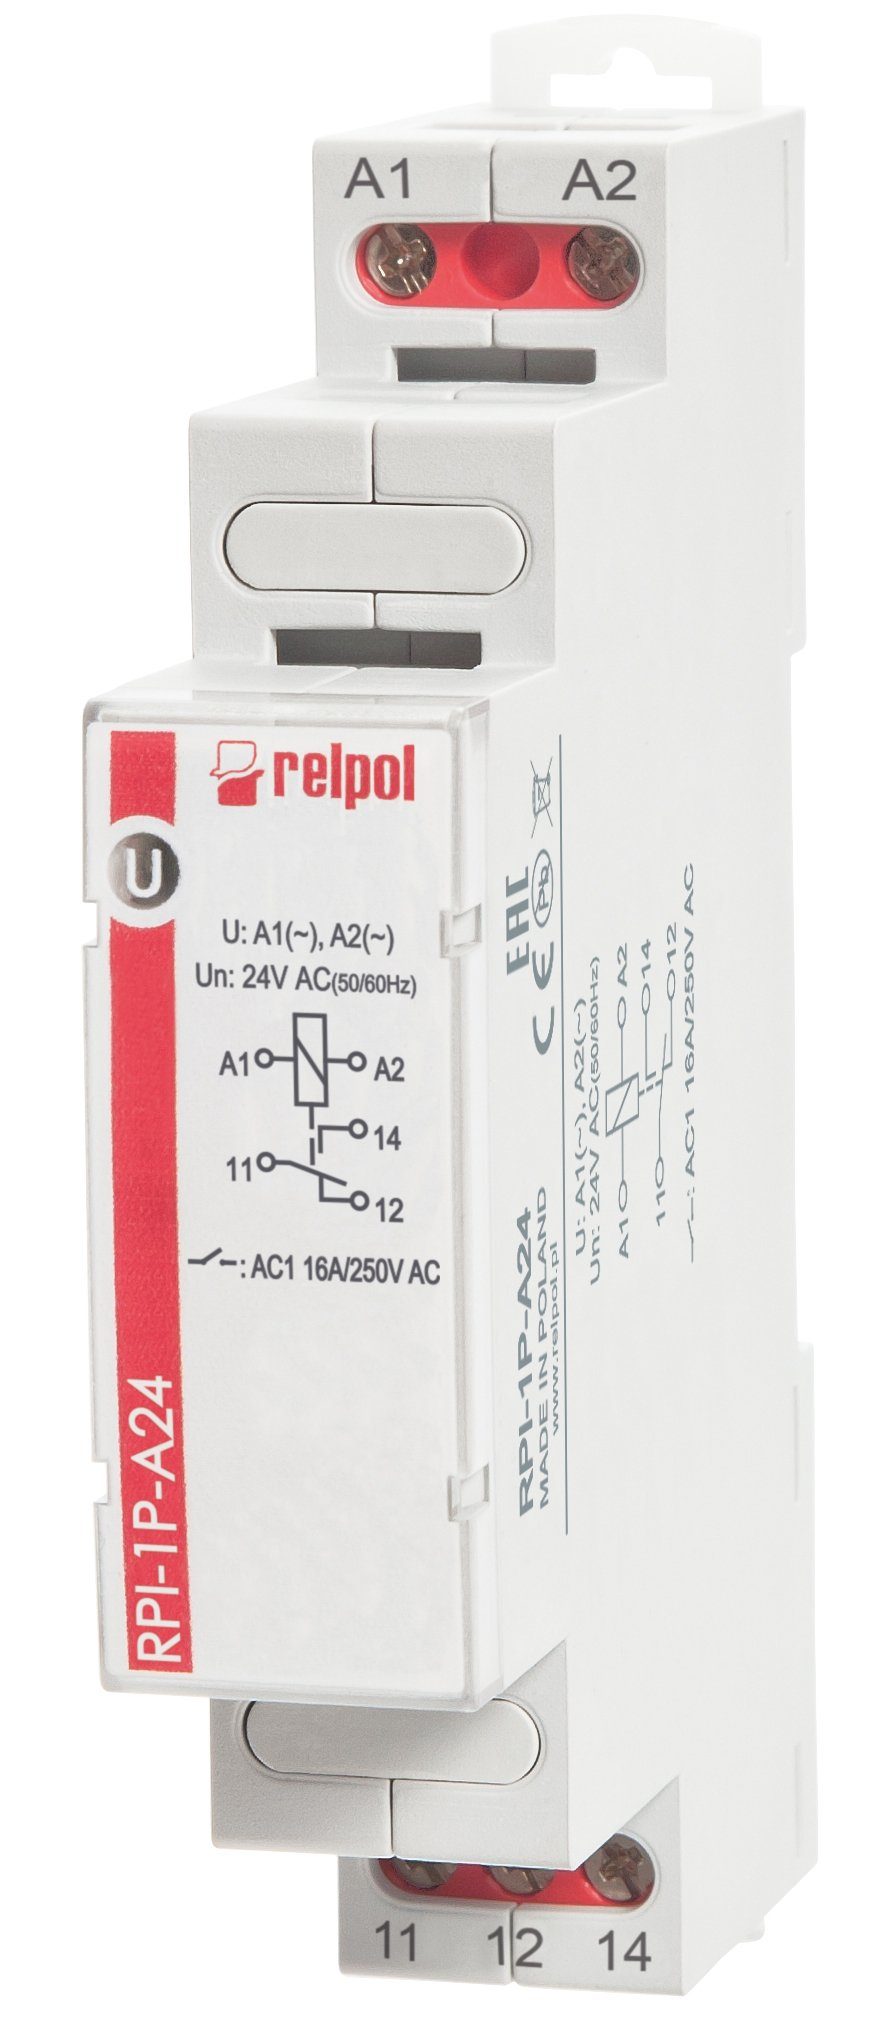 Relpol Verteilerbox RPI-1P-A24 - 24V Schaltrelais Hutschiene 1 Wechsler, 16A Installationsrelais AC für